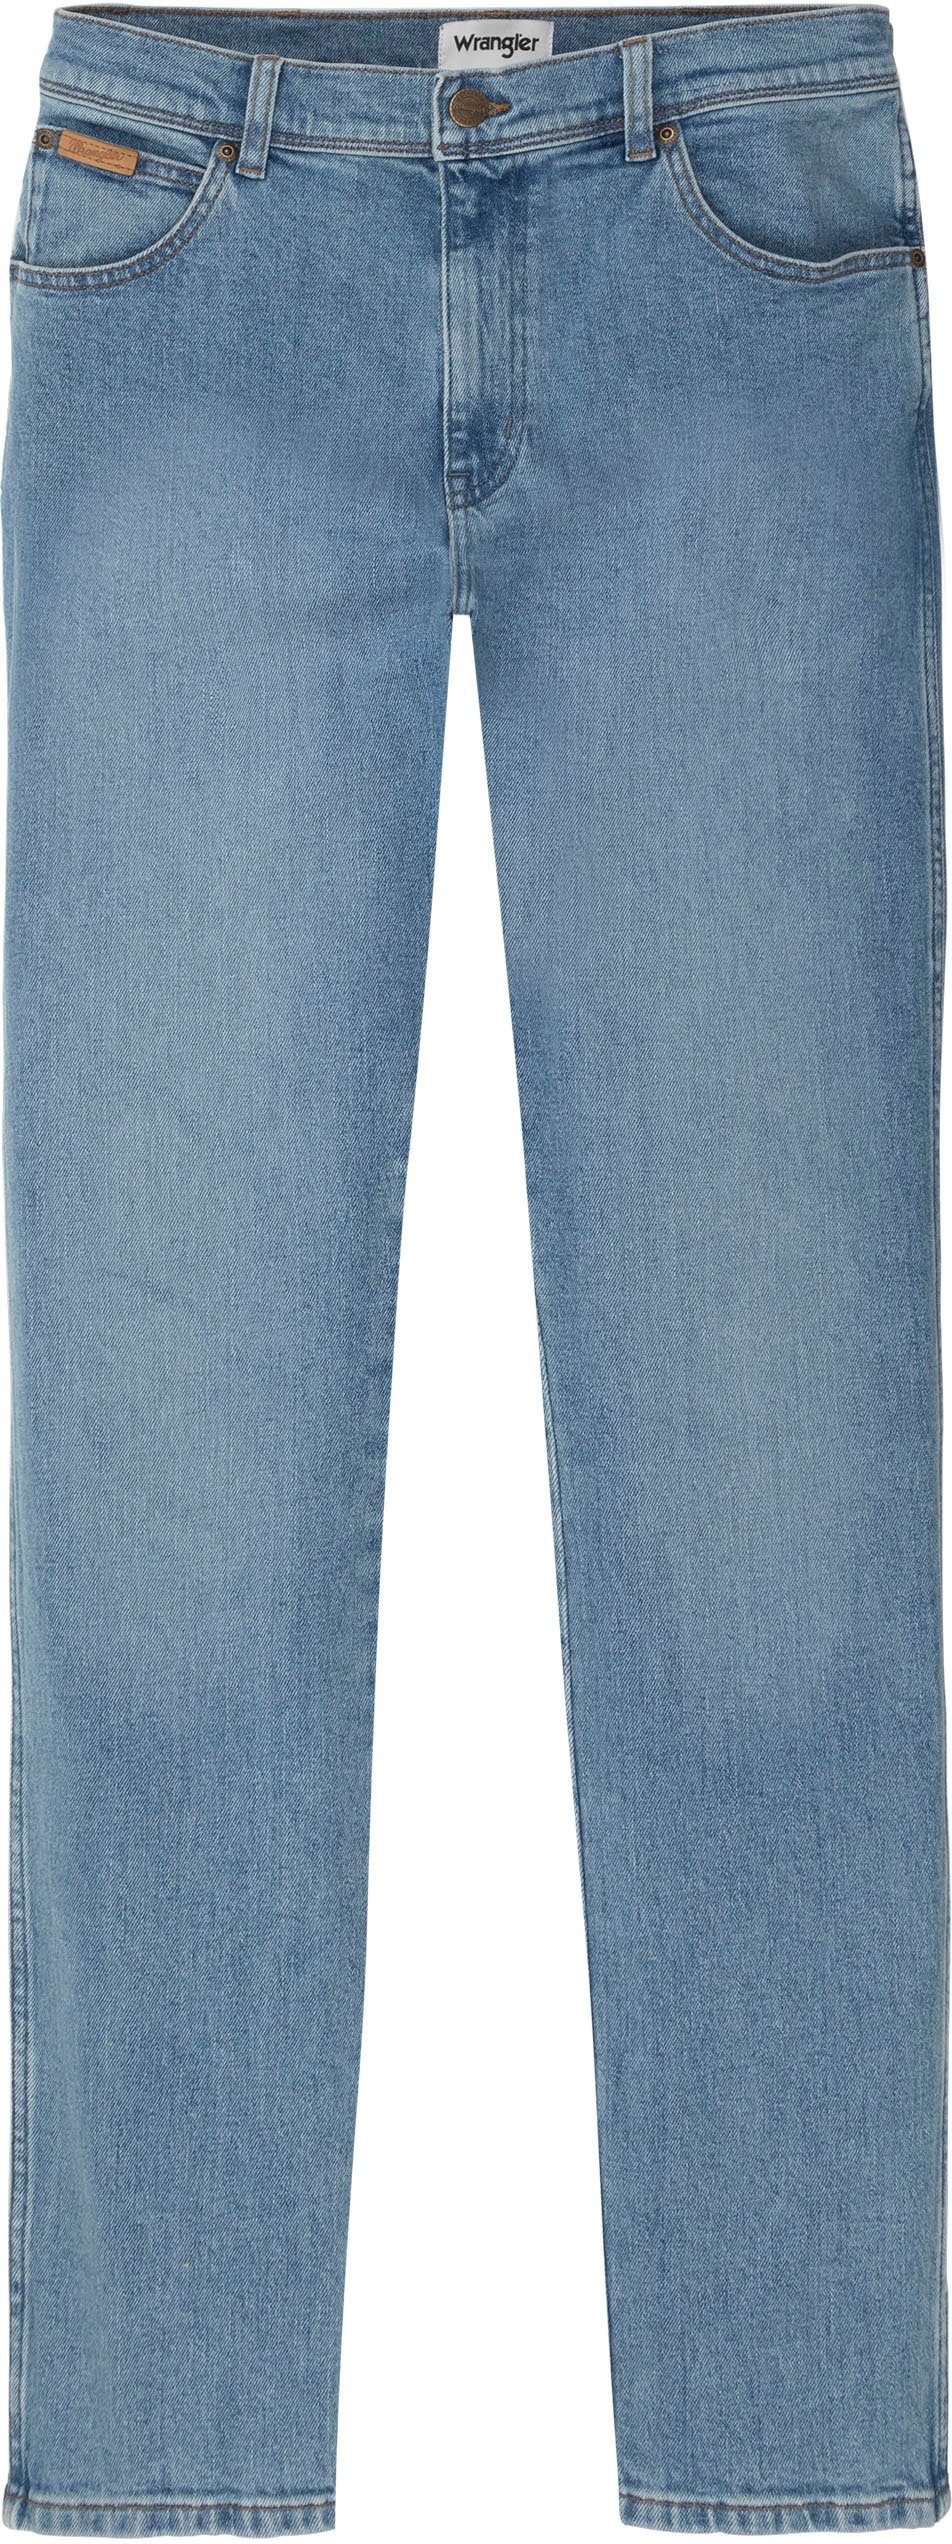 Wrangler Slim-fit-Jeans Texas Slim in leicht gewaschener Optik